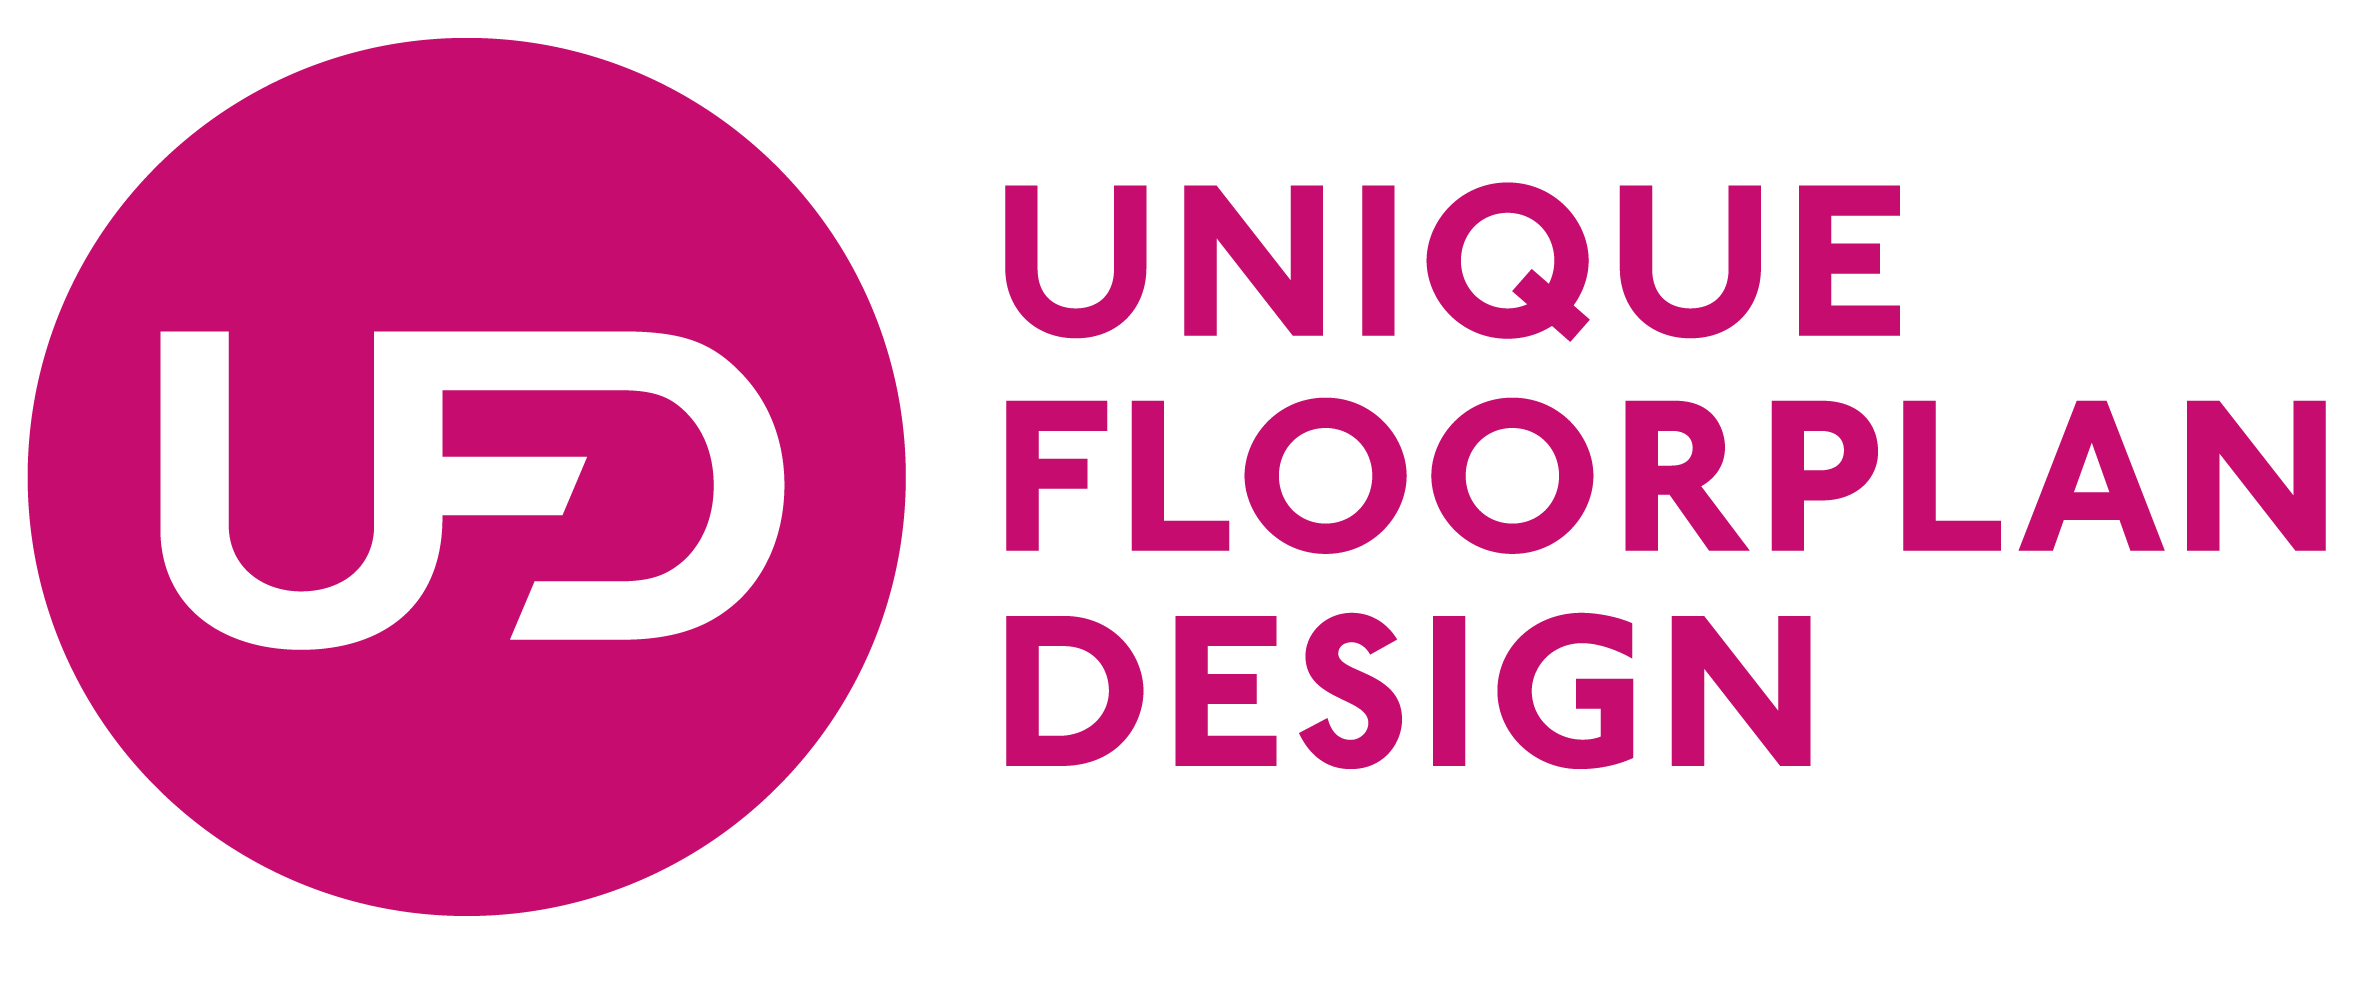 Unique Floorplan Design